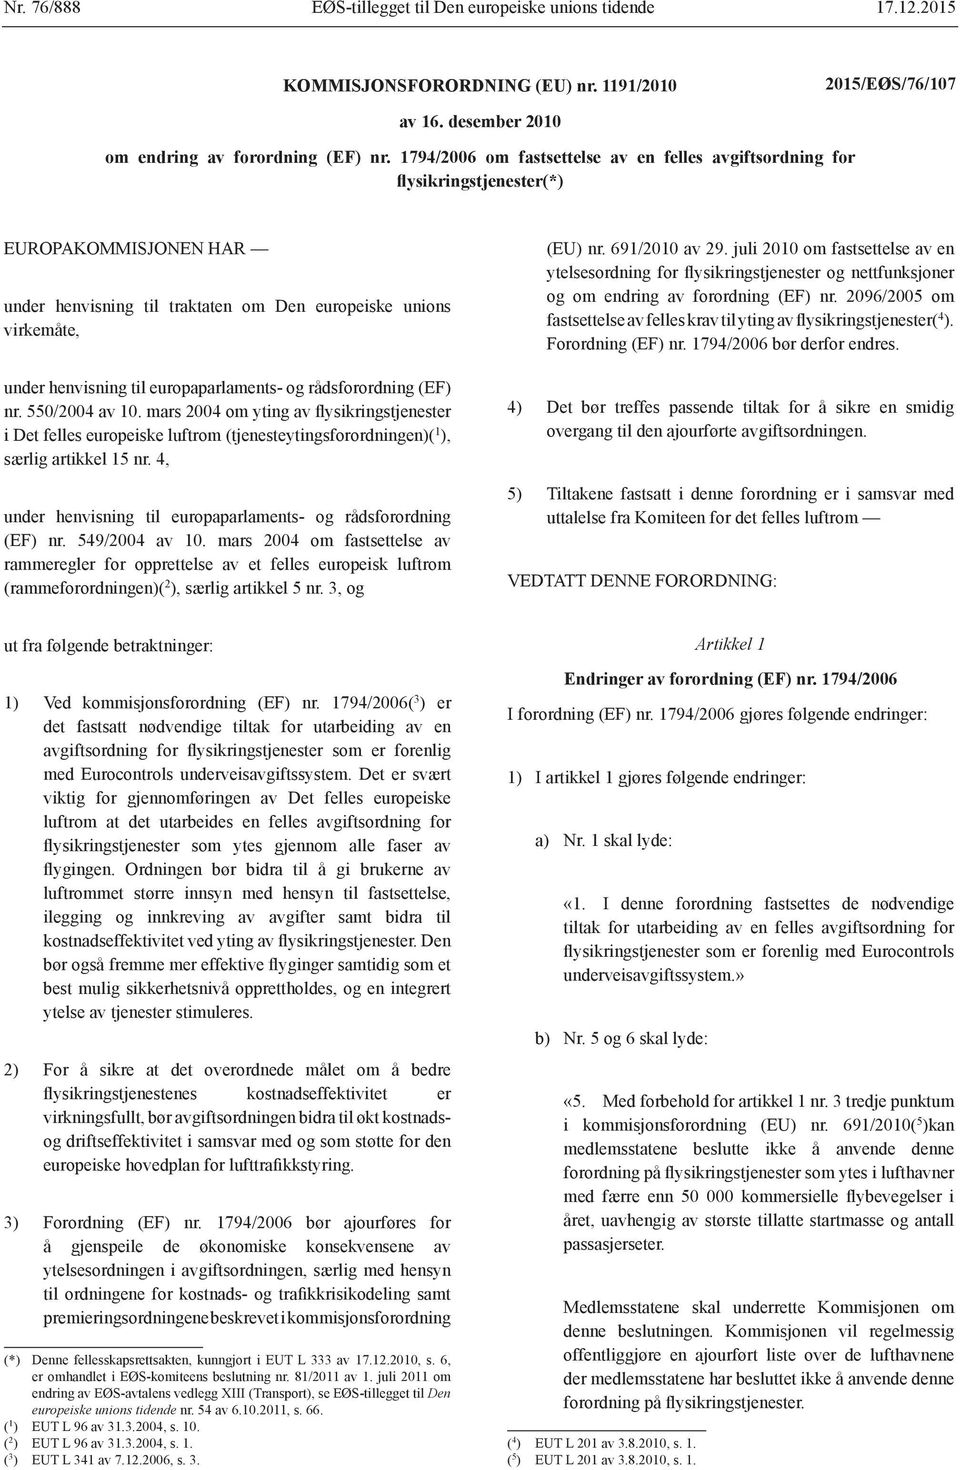 europaparlaments- og rådsforordning (EF) nr. 550/2004 av 10. mars 2004 om yting av flysikringstjenester i Det felles europeiske luftrom (tjenesteytingsforordningen)( 1 ), særlig artikkel 15 nr.